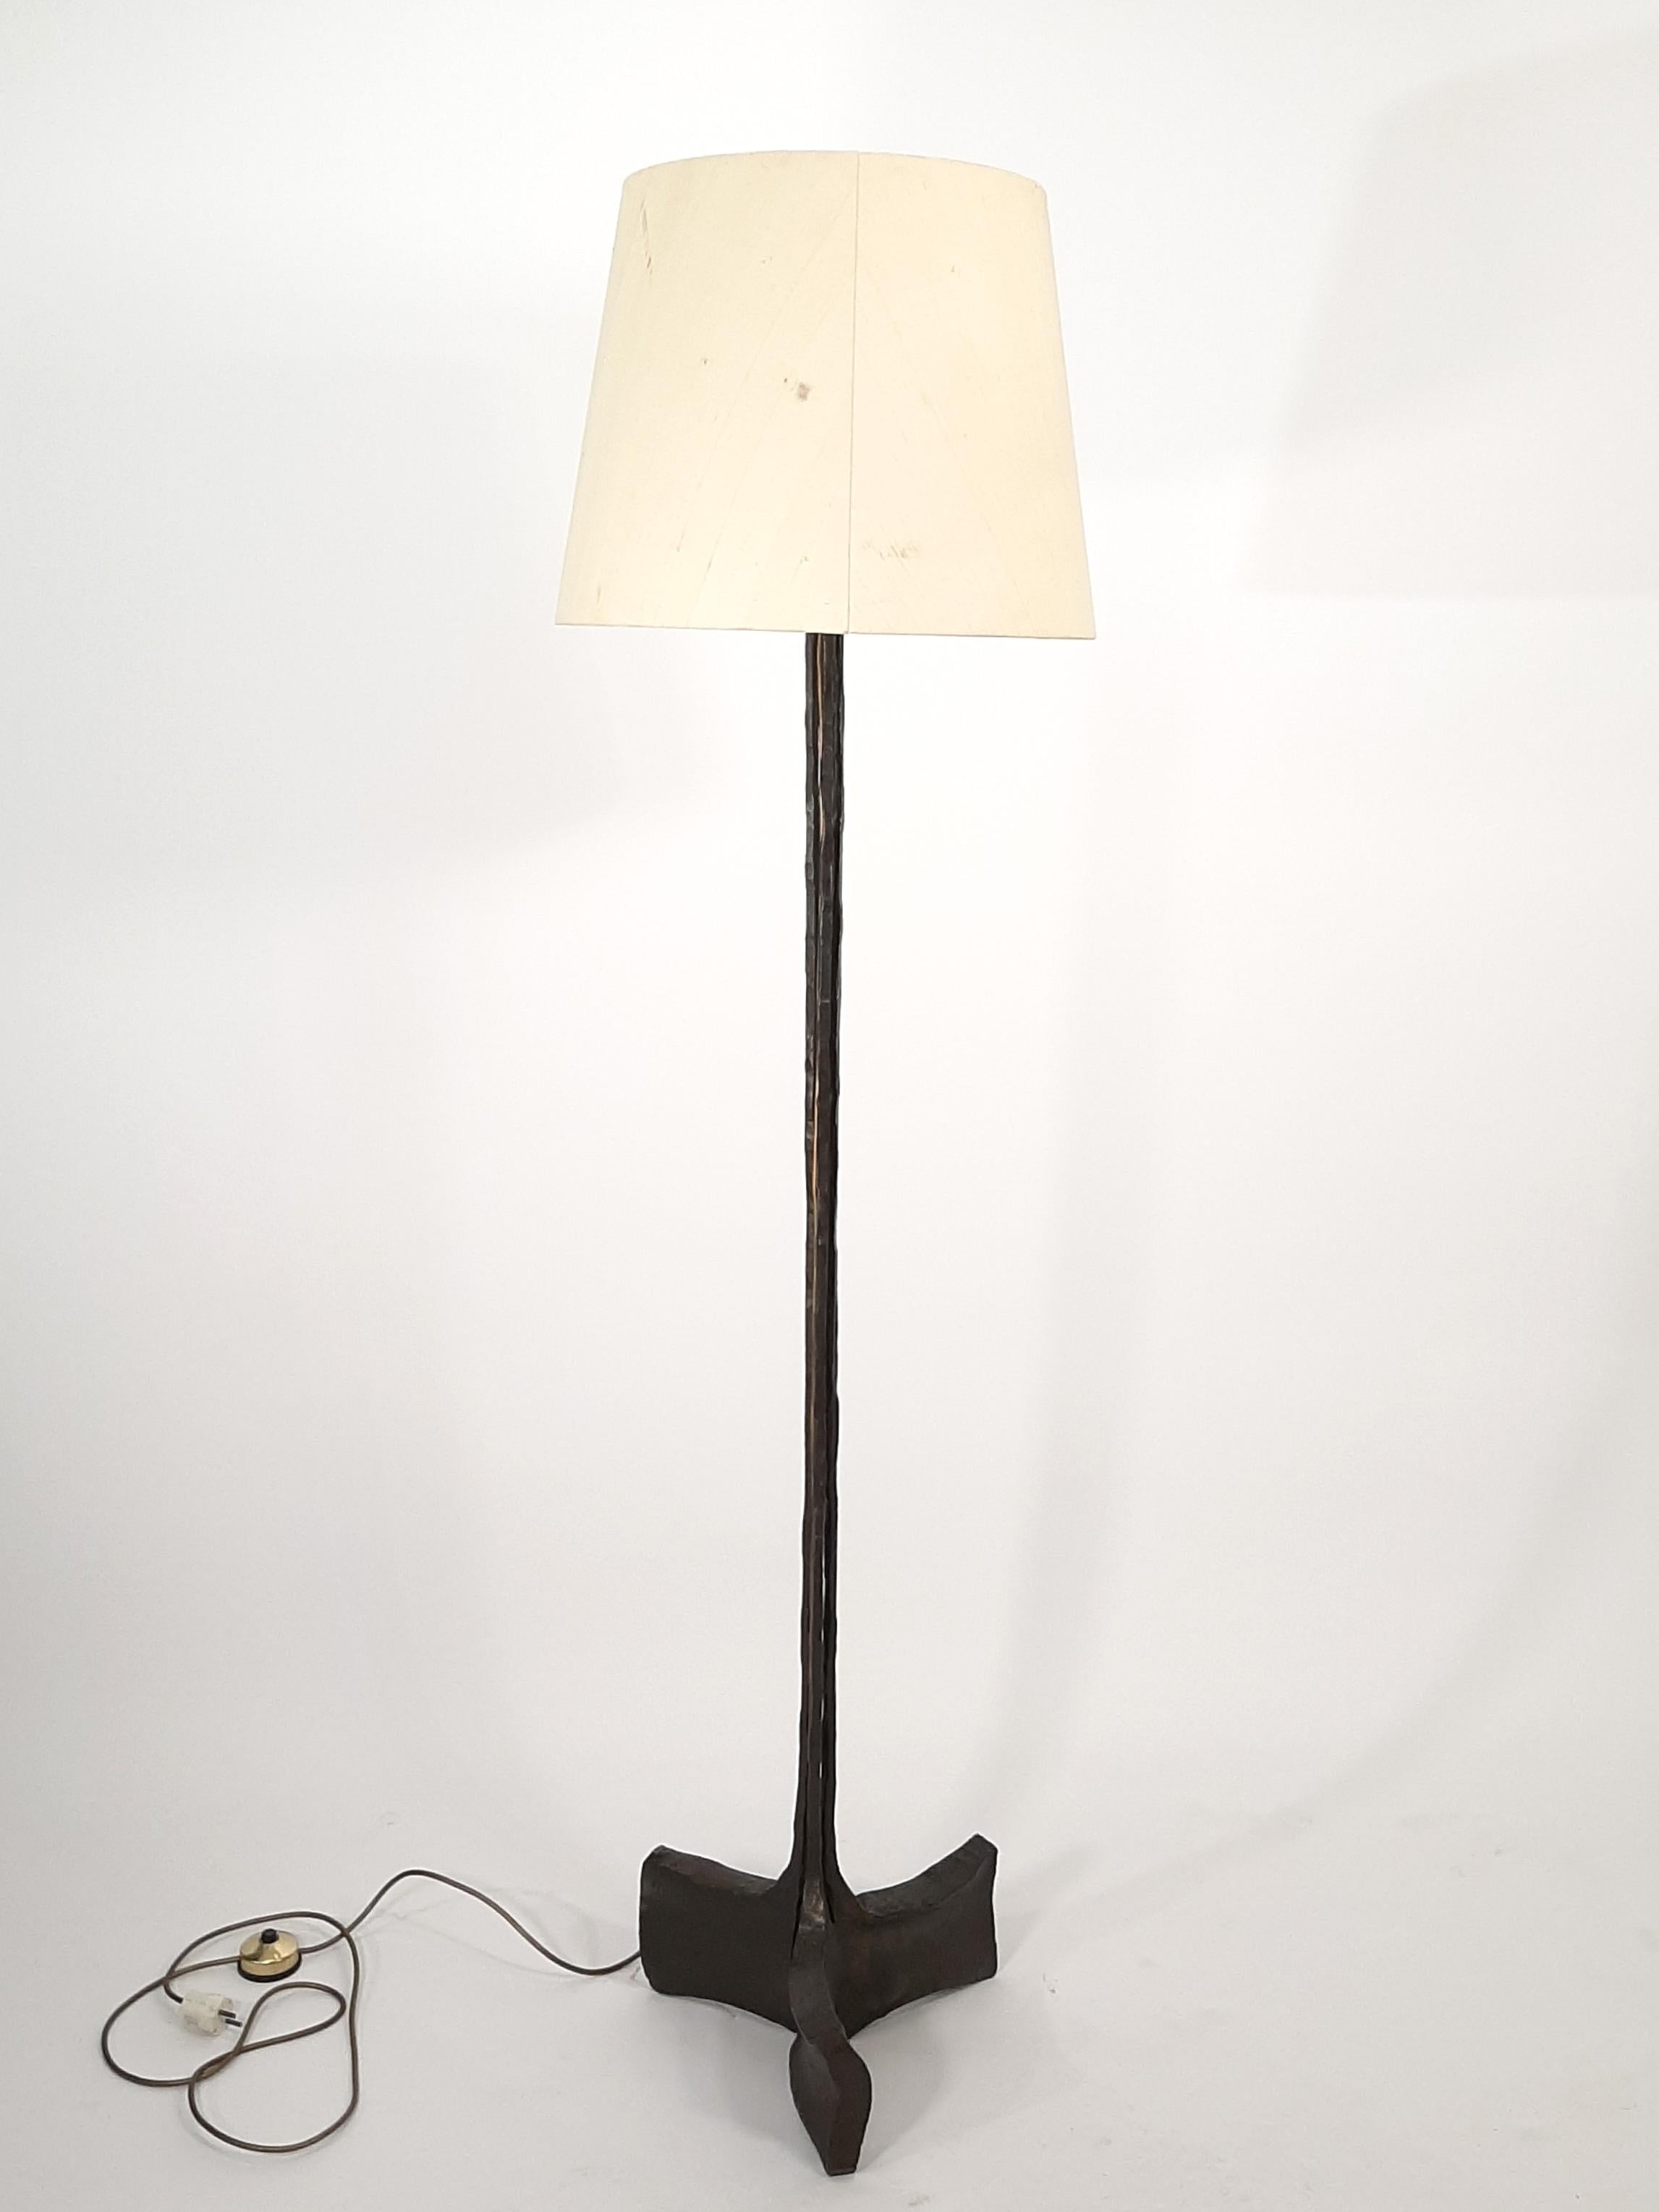 Rare lampadaire de Lothar Klute, un certificat d'authenticité délivré par la famille Klute est également joint. La hauteur au niveau des ampoules est réglable par un système ingénieux. Etat d'origine, teinte et câblage. 